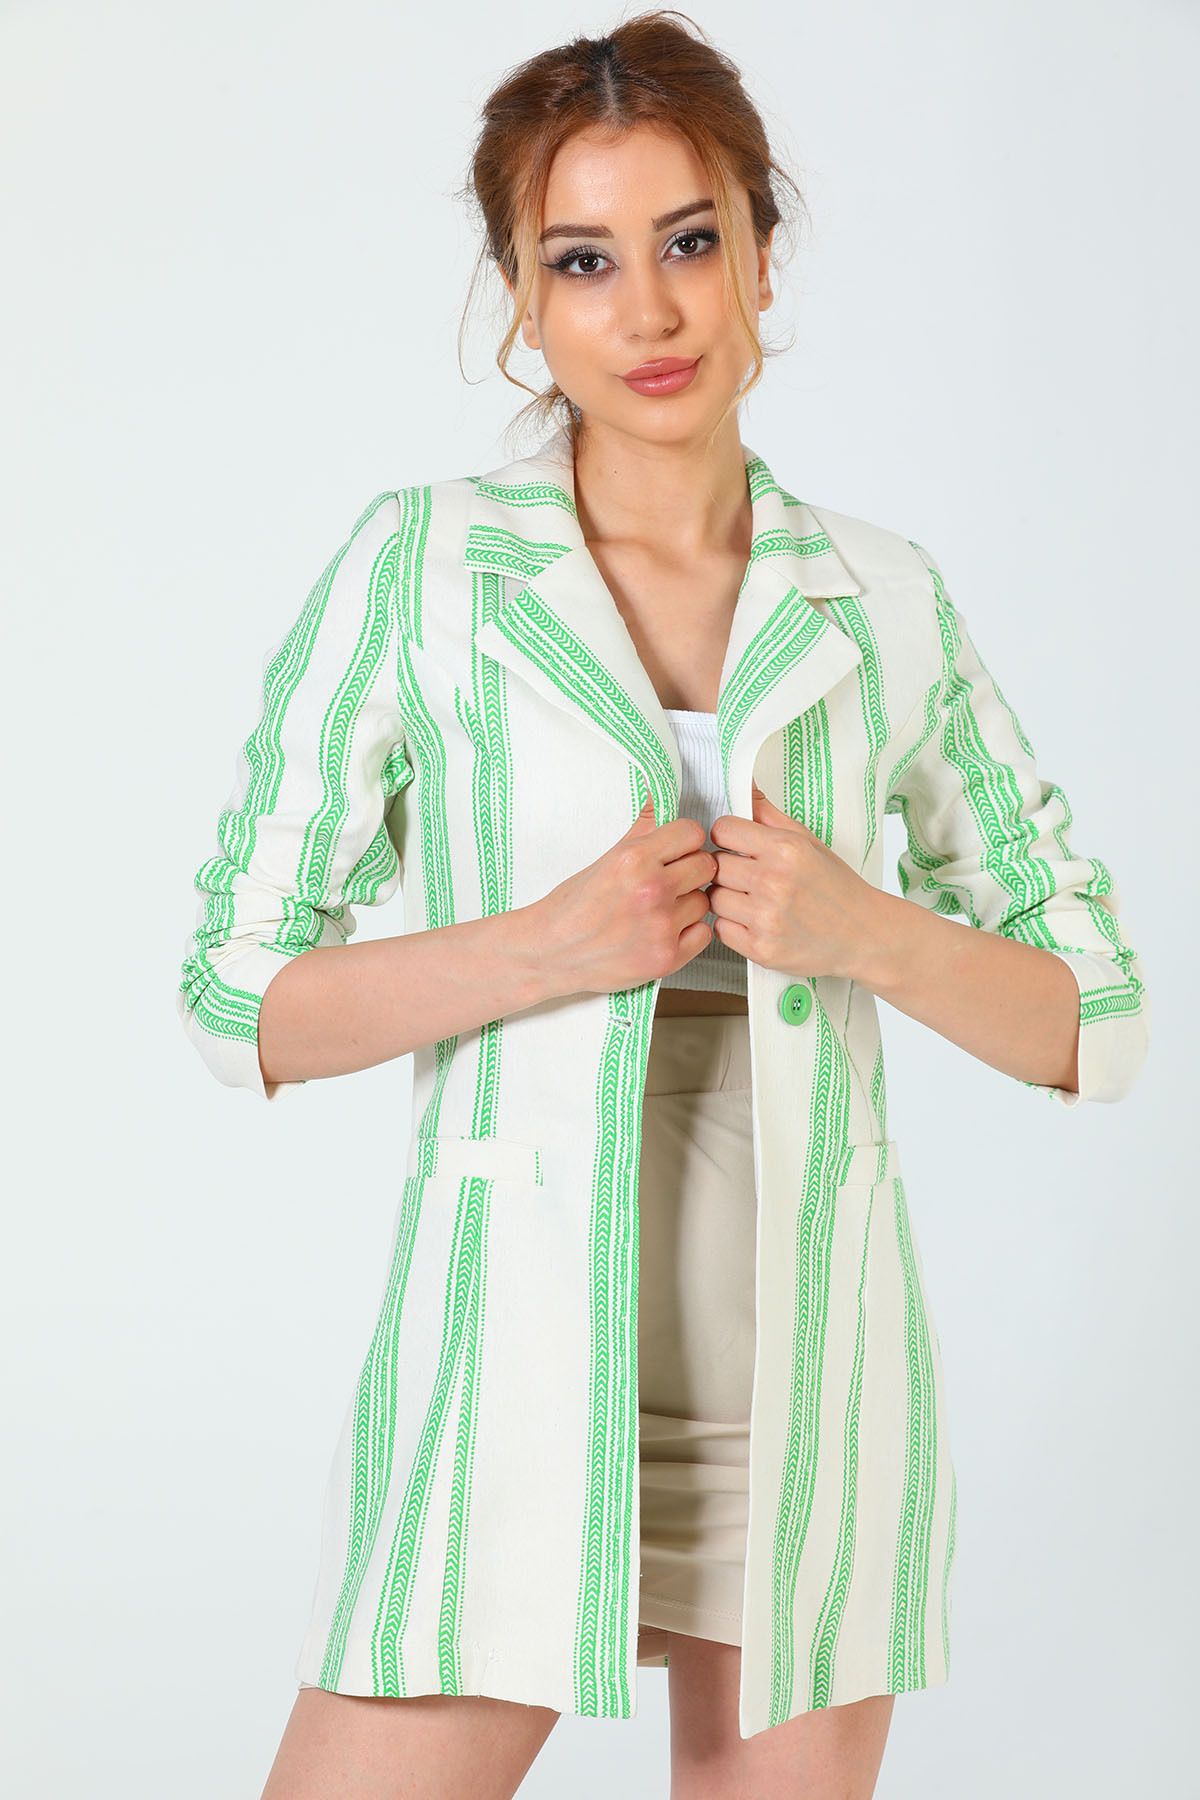 Julude Kremyeşil Kadın Çizgi Desenli Sahte Cep Detaylı Blazer Ceket